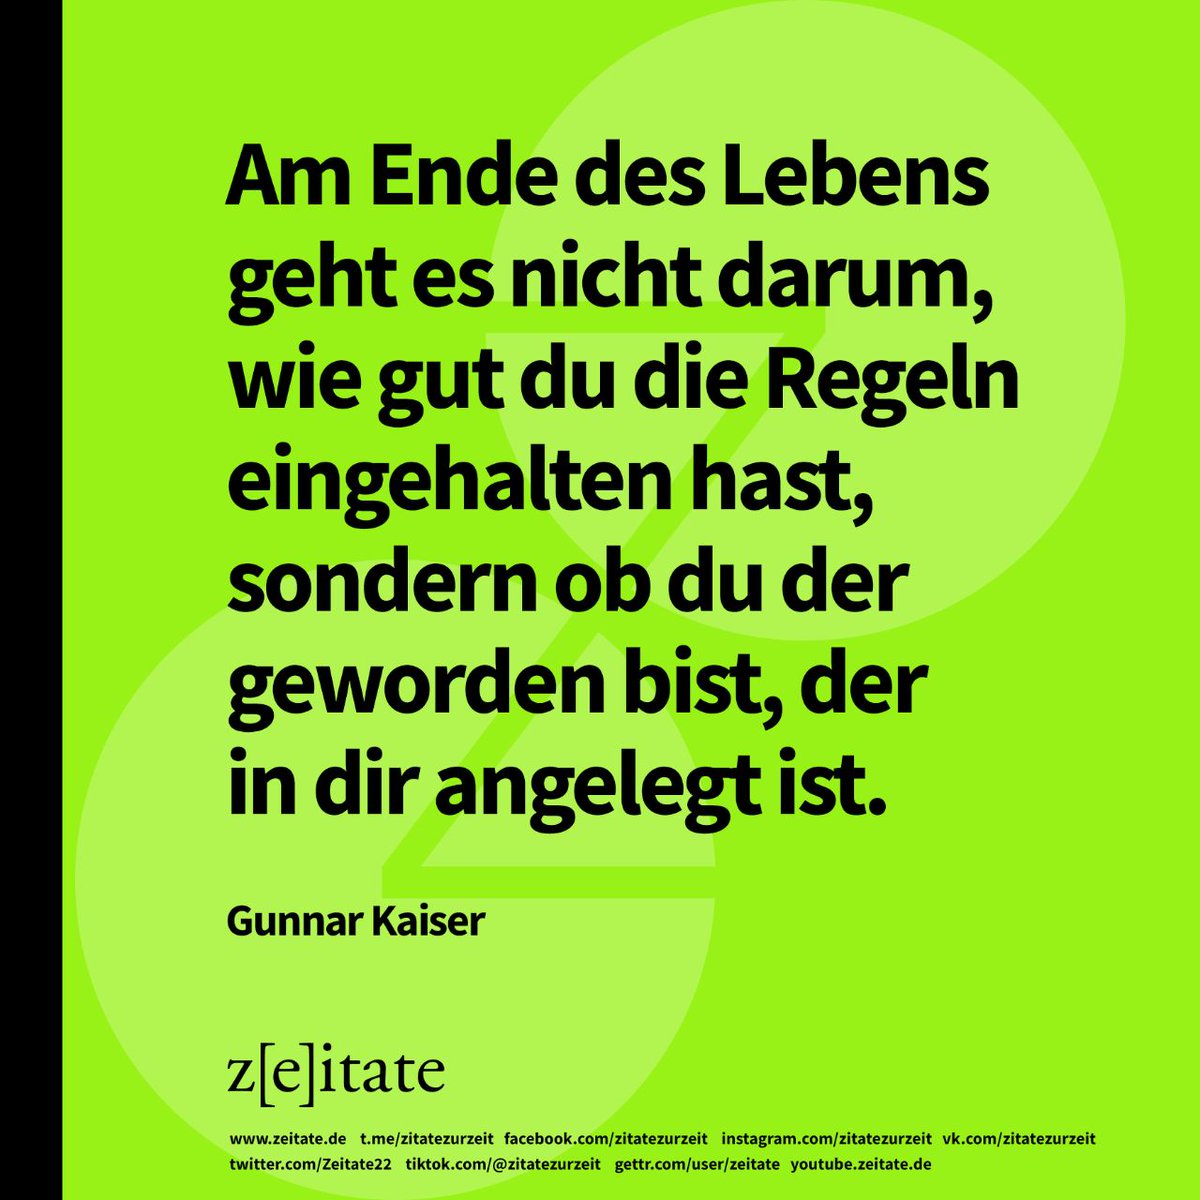 #gunnarkaiser #philoph #autor #mutigsein #regen #deutschland #zeitate #selbstsein #gesellschaft